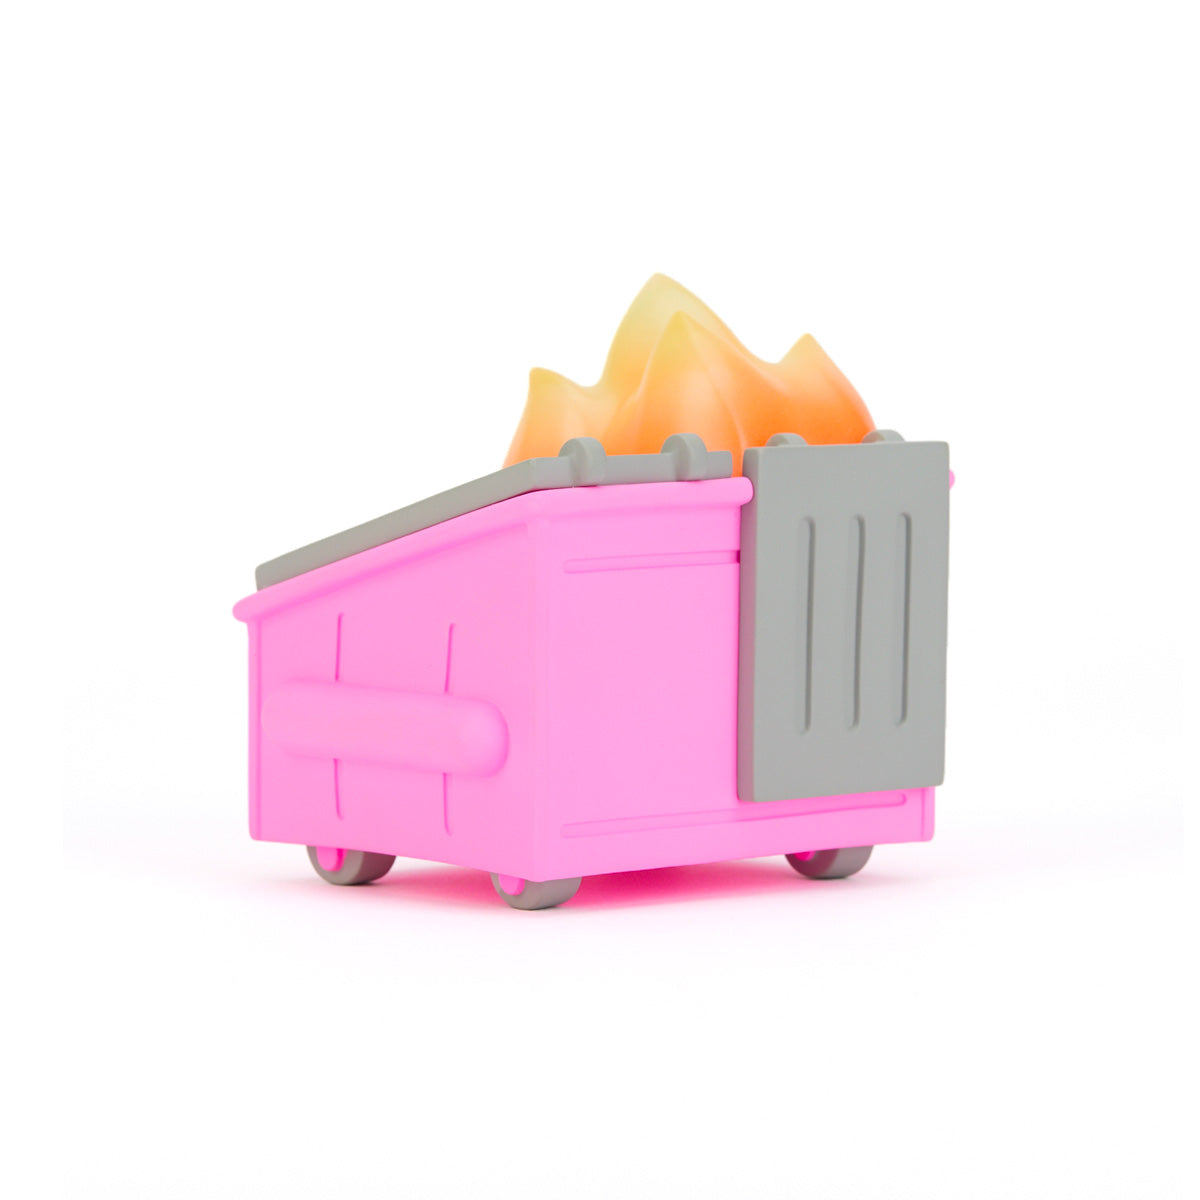 Dumpster Fire Vinyl Figure - Pepto Pink